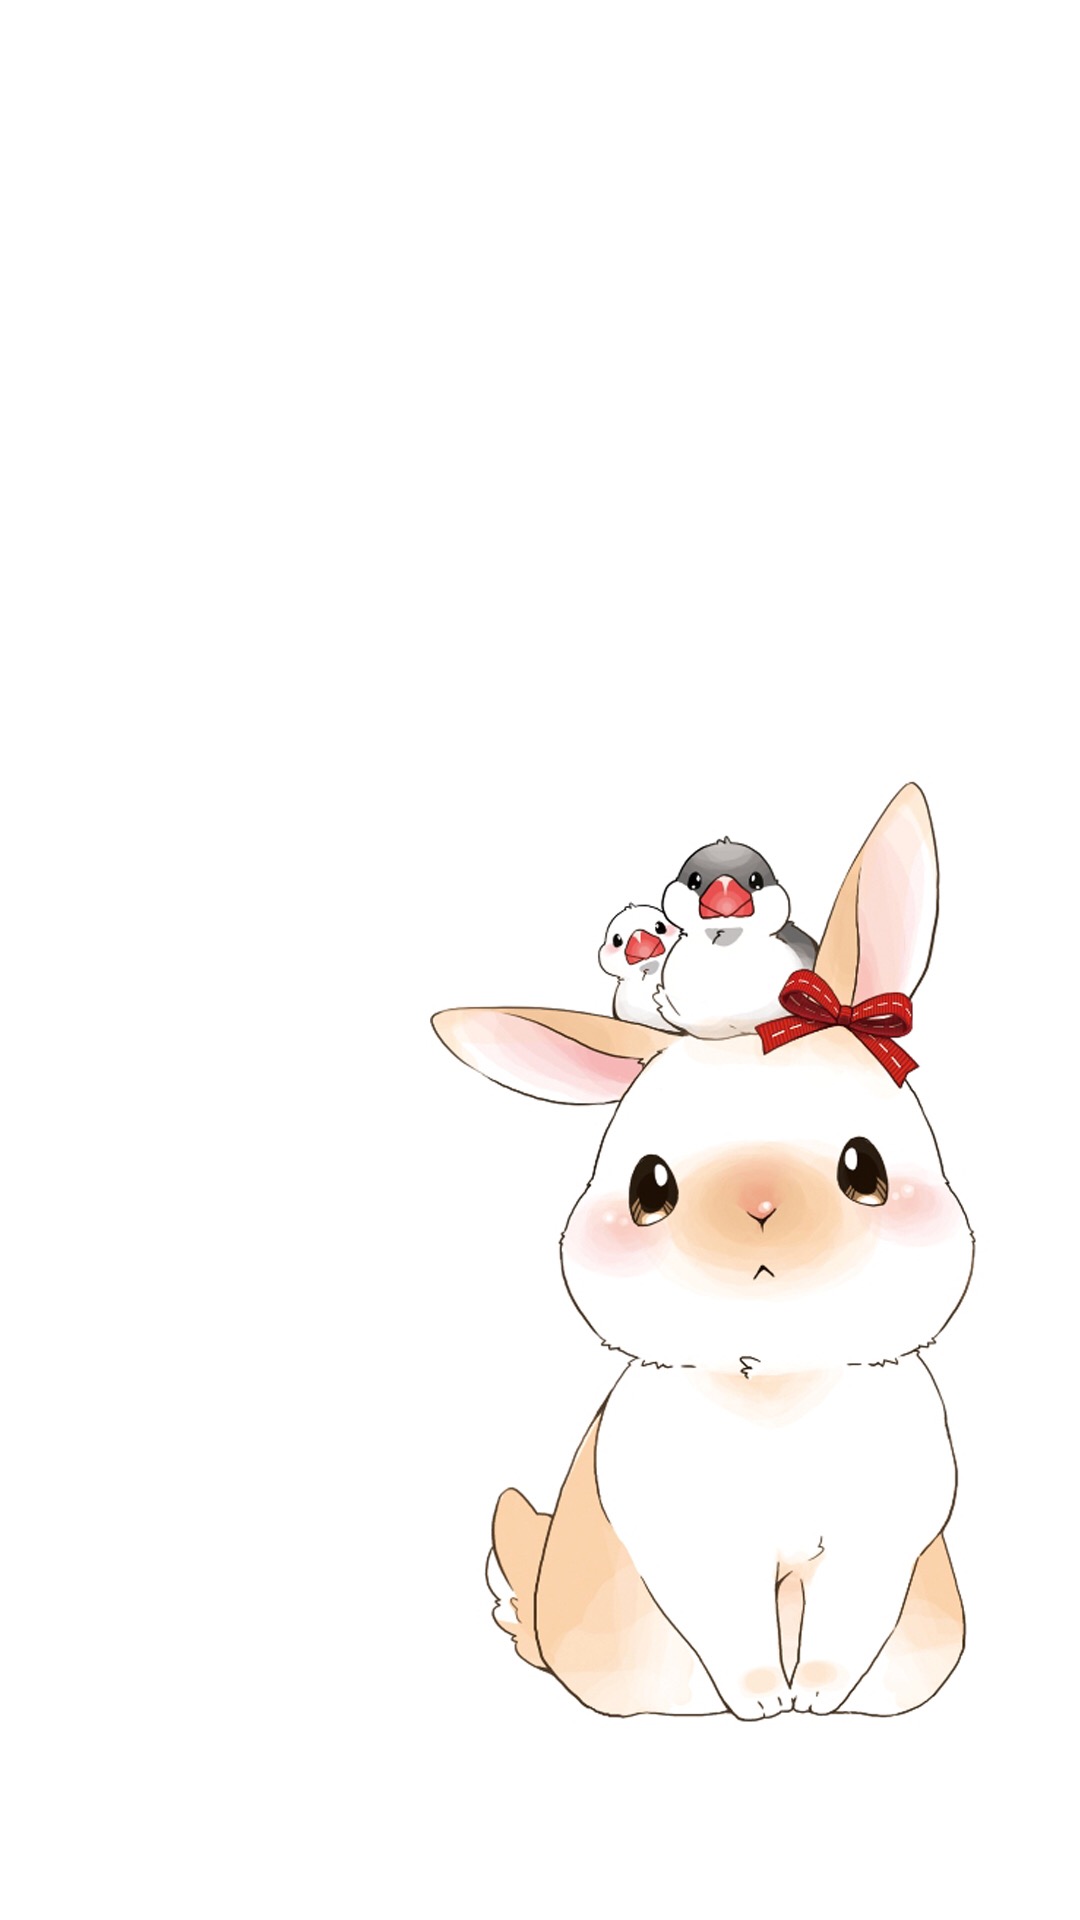 超萌小兔子插画  超萌可爱卡通小兔子(3)